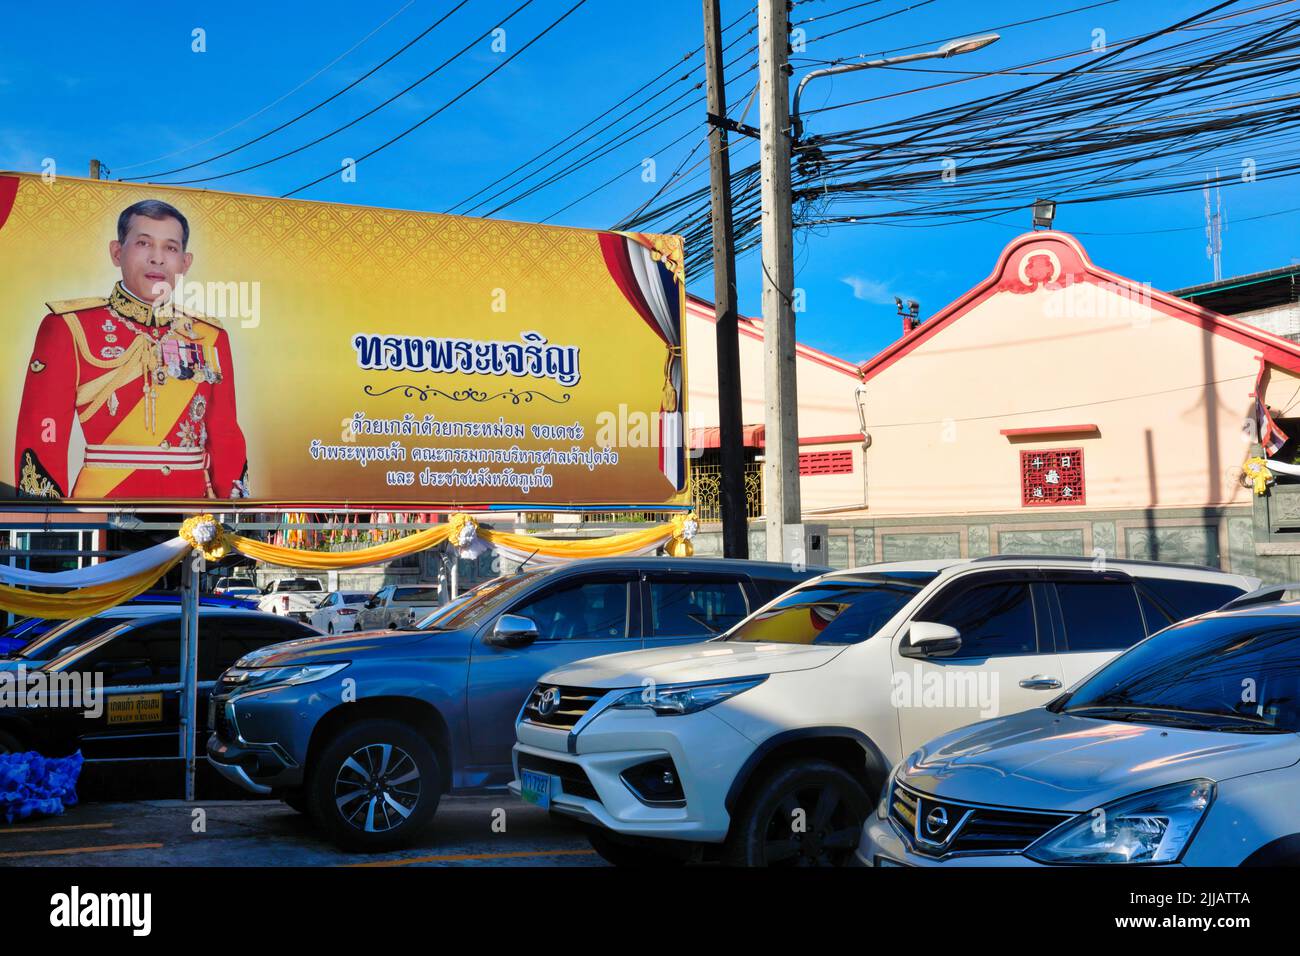 Un grand portrait du roi thaïlandais Maha Chulalongkorn, Rama X., surplombe un parking devant un temple taoïste-chinois dans la ville de Phuket, en Thaïlande Banque D'Images